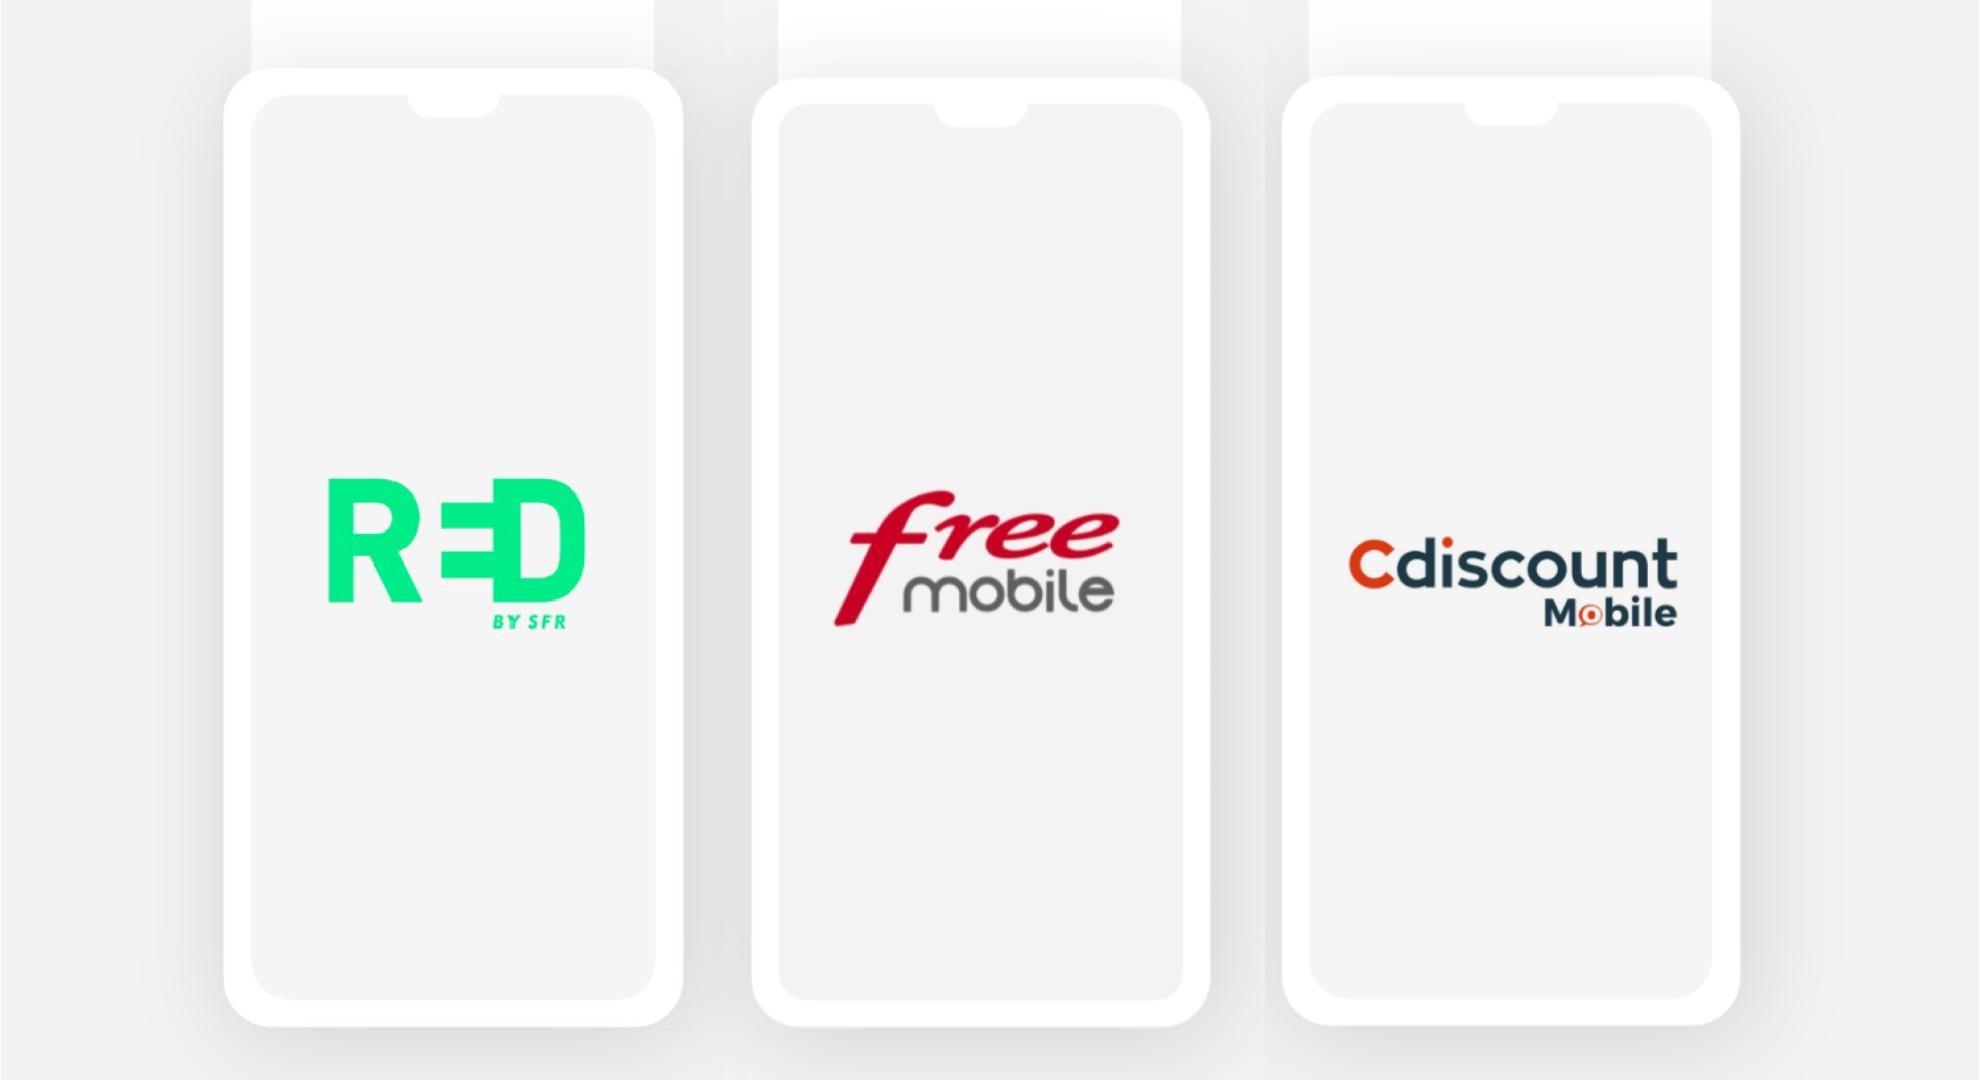 Forfait mobile : derniers jours pour profiter des offres RED, Free et Cdiscount